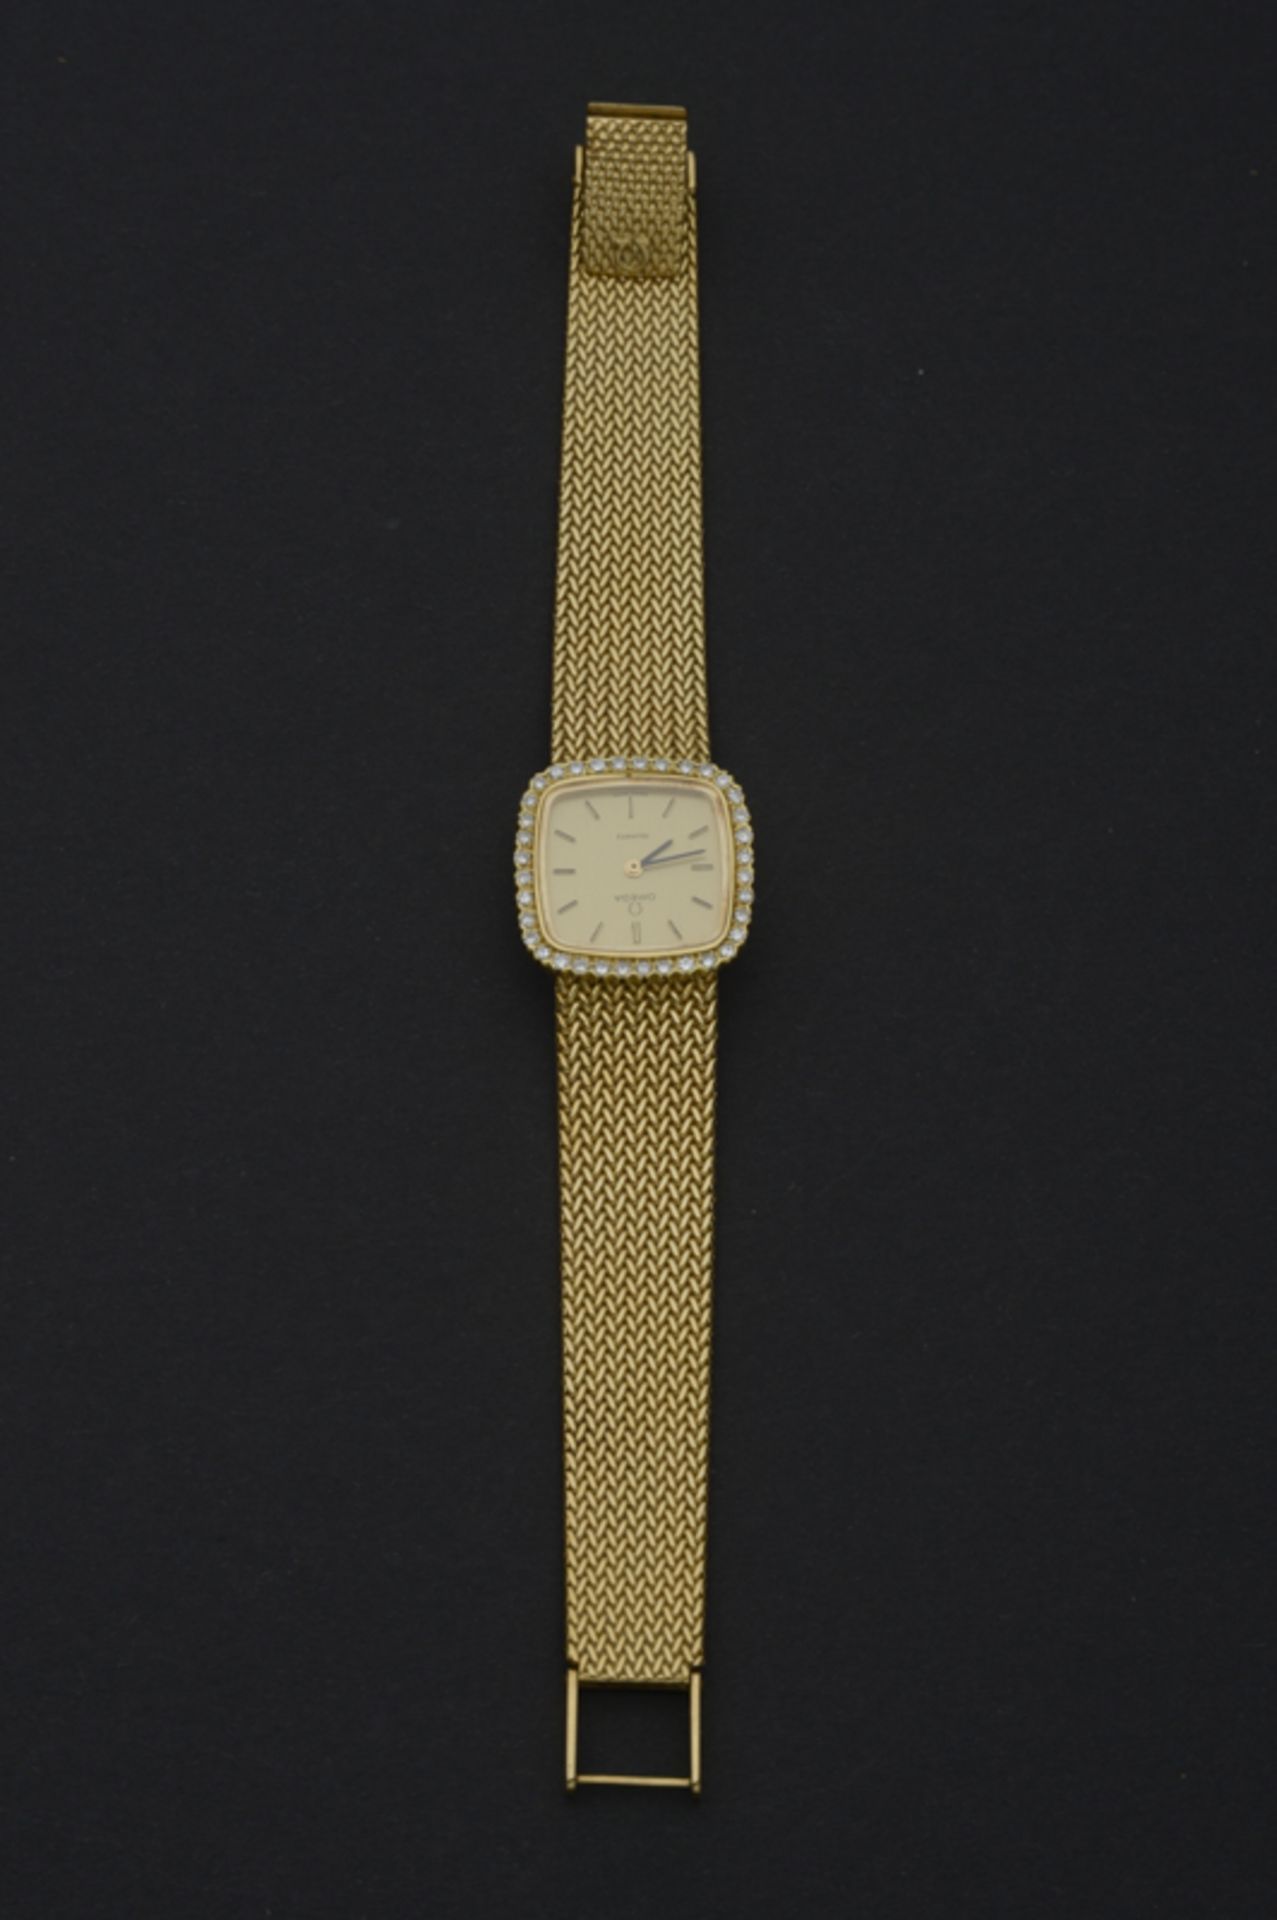 Damenarmbanduhr aus 750er Gelbgold der Manufaktur: Omega Uhren, Biel (Schweiz), 20. Jhd., Gewicht